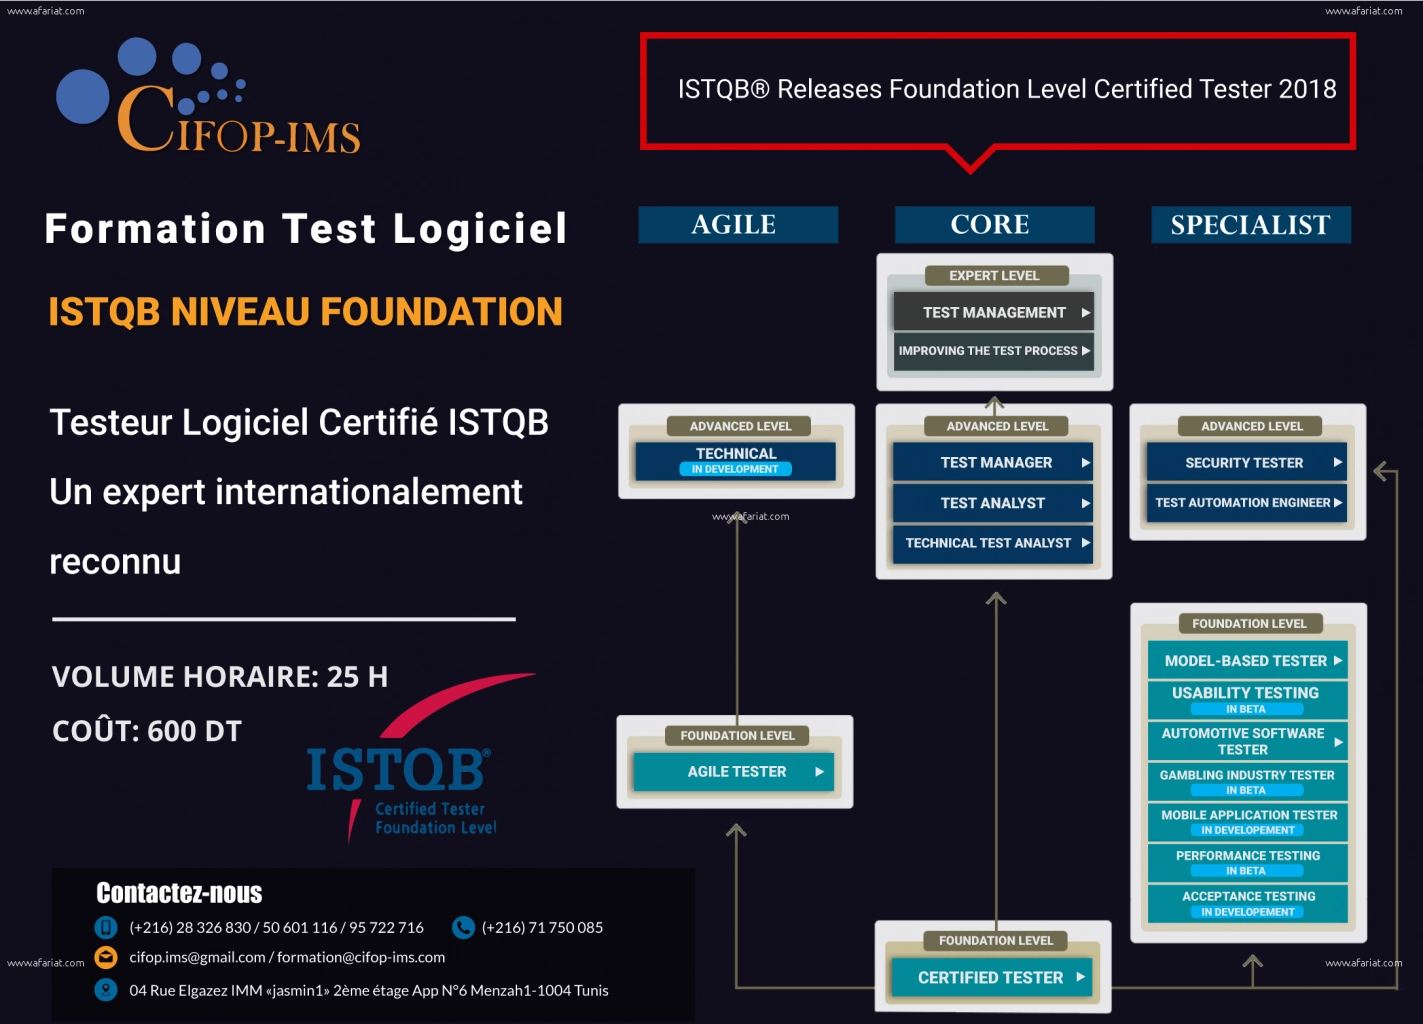 ISTQB niveau Foundation